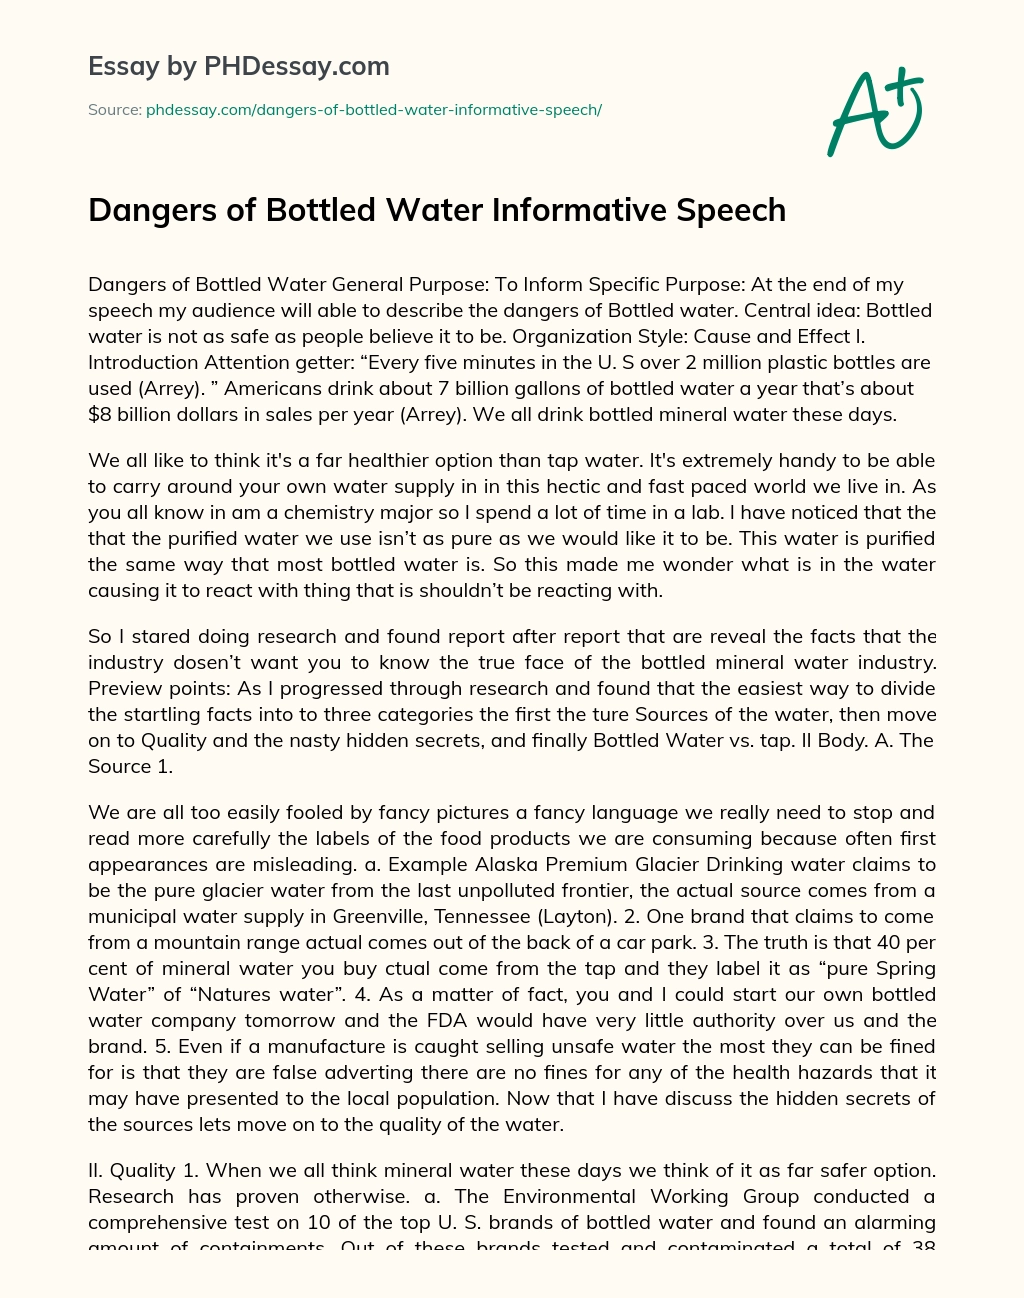 Dangers of Bottled Water Informative Speech essay